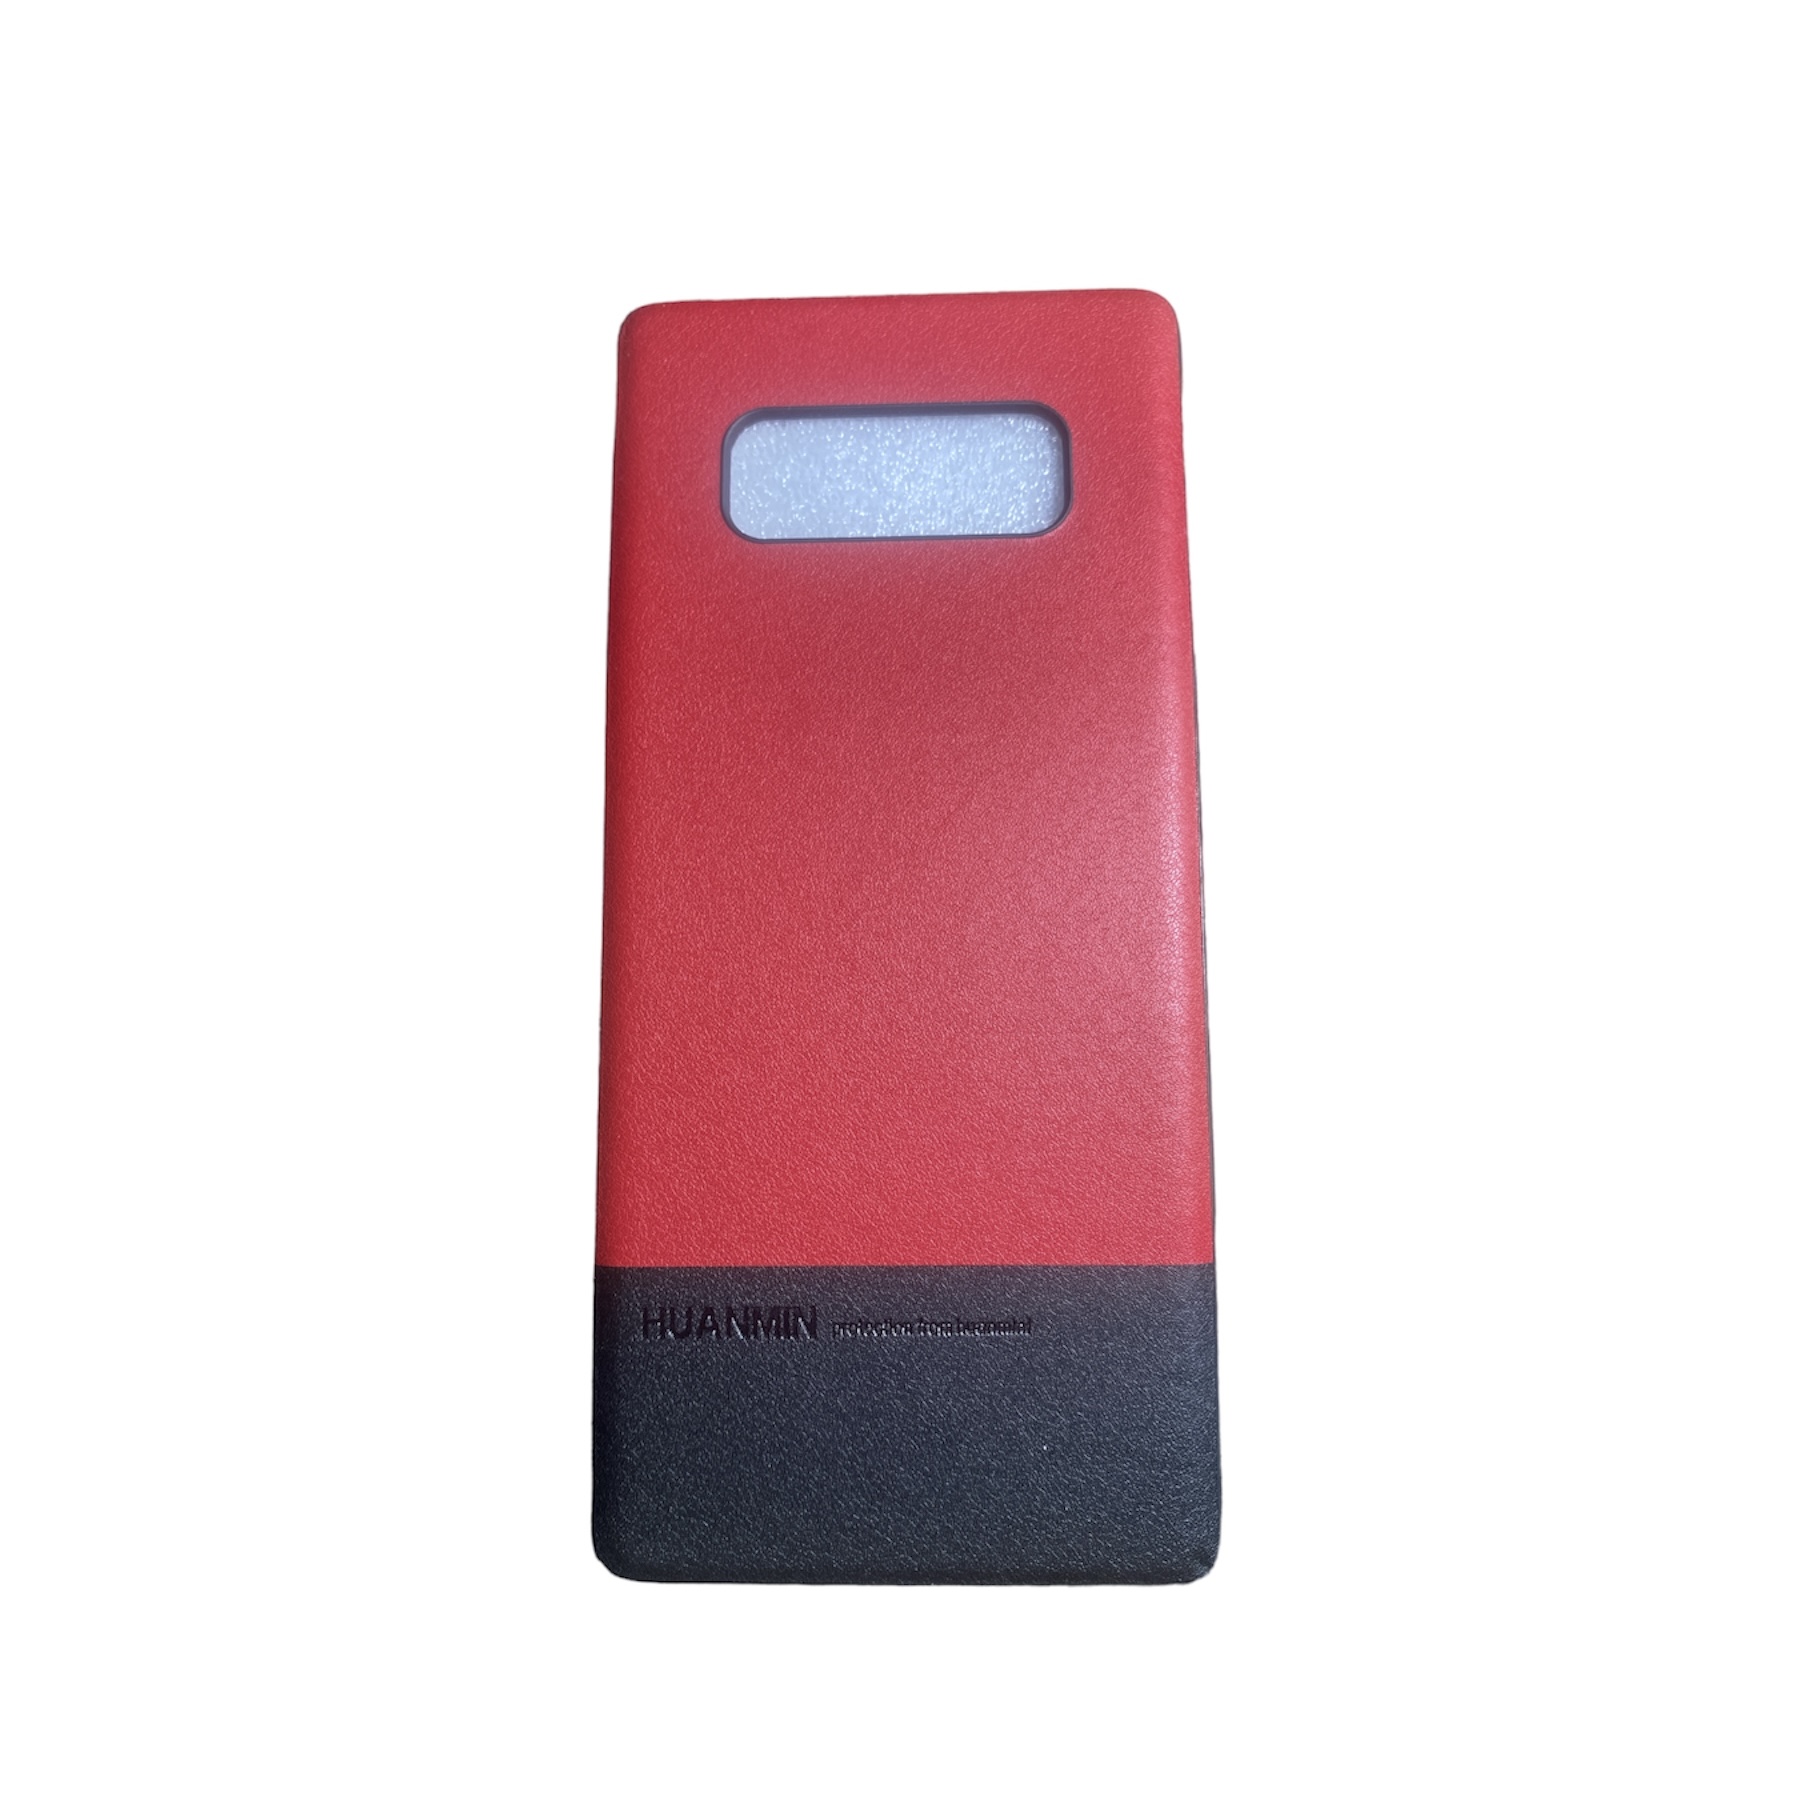 کاور هوآنمین مدل vip2 مناسب برای گوشی موبایل سامسونگ Galaxy  note8